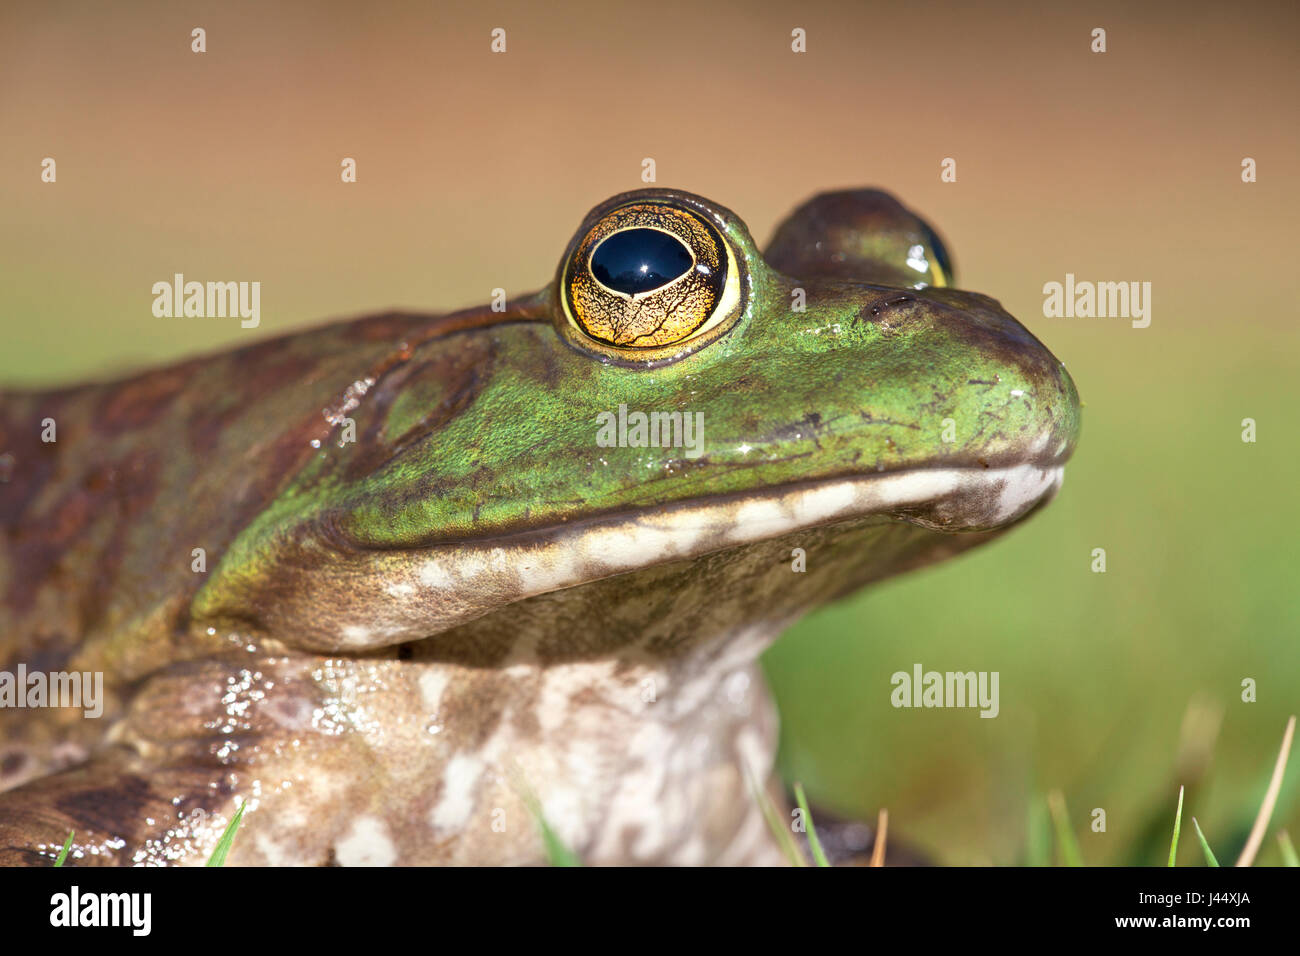 Retrato de una rana toro de América del Norte Foto de stock